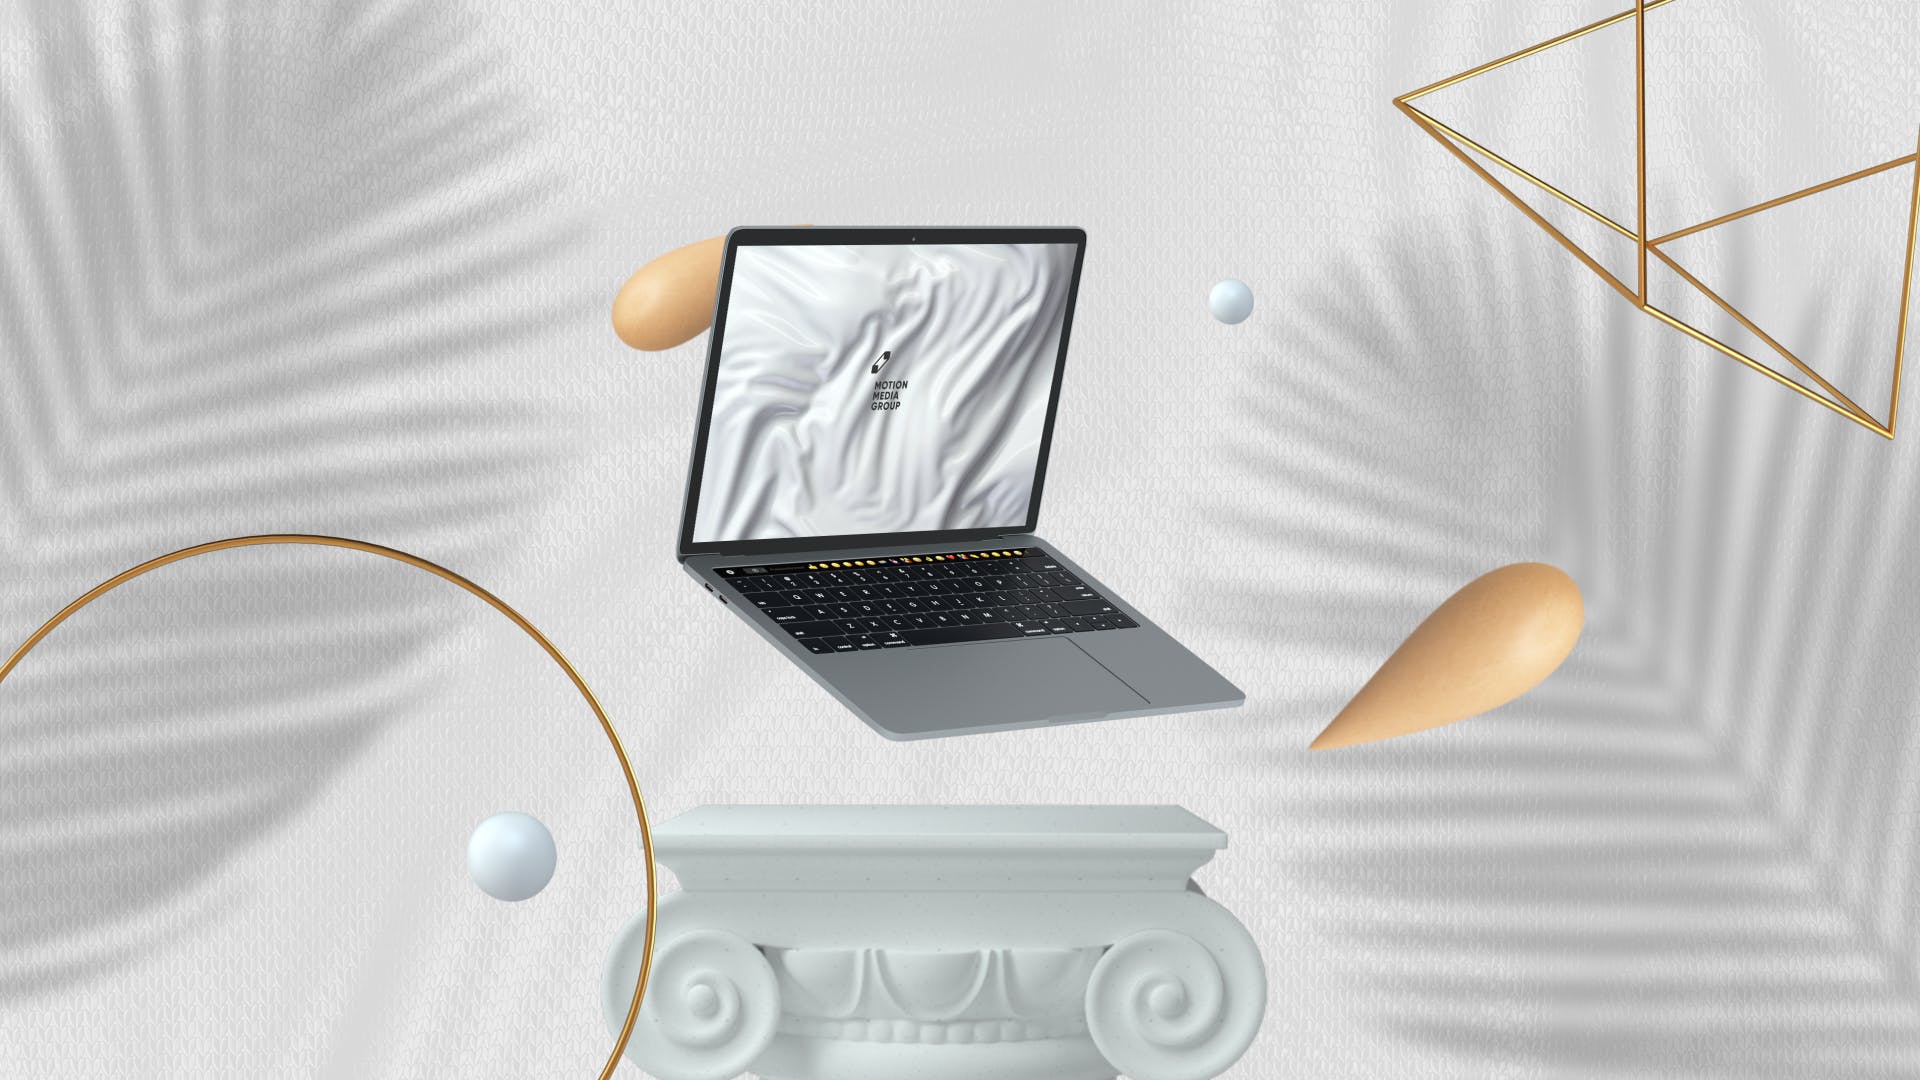 优雅时尚风格3D立体风格笔记本电脑屏幕预览第一素材精选样机 10 Light Laptop Mockups插图(8)